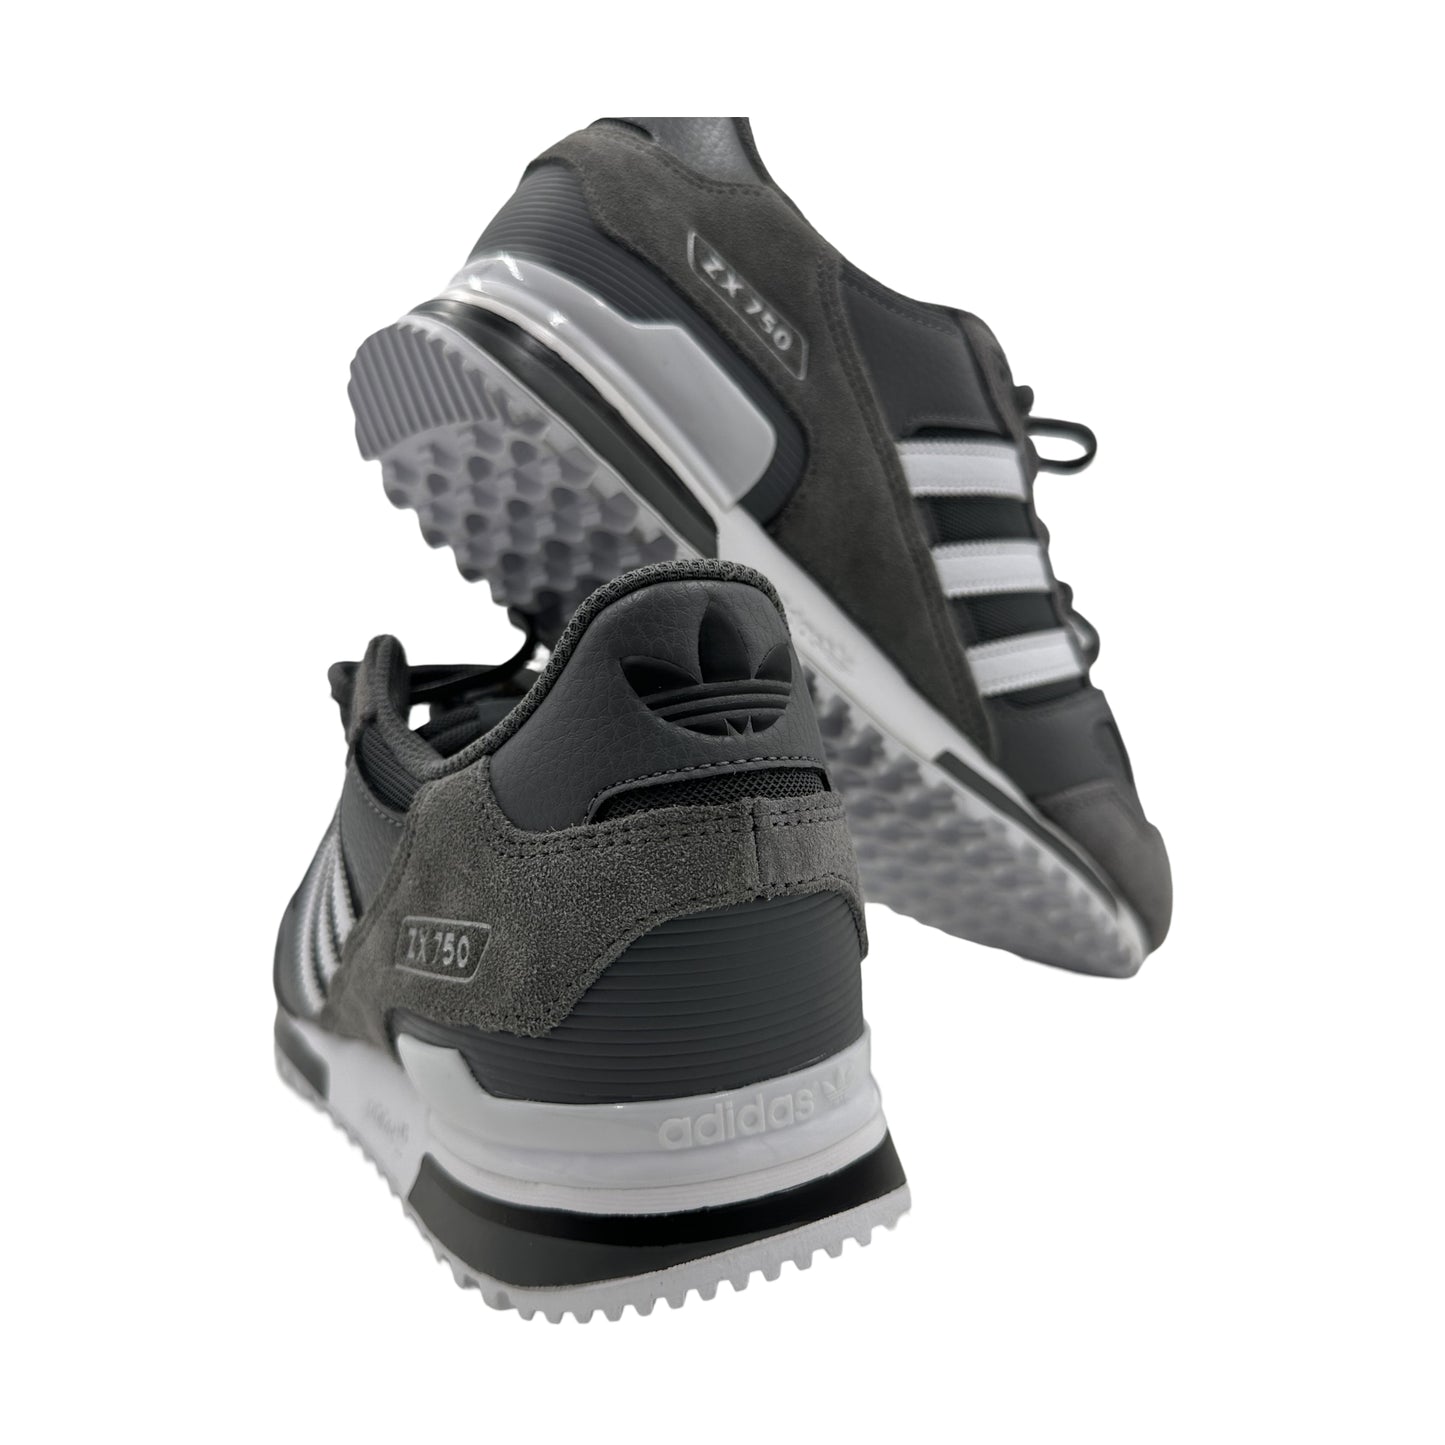 Adidas Originals Men's Grey Retro Running Low Sneakers - ZX750